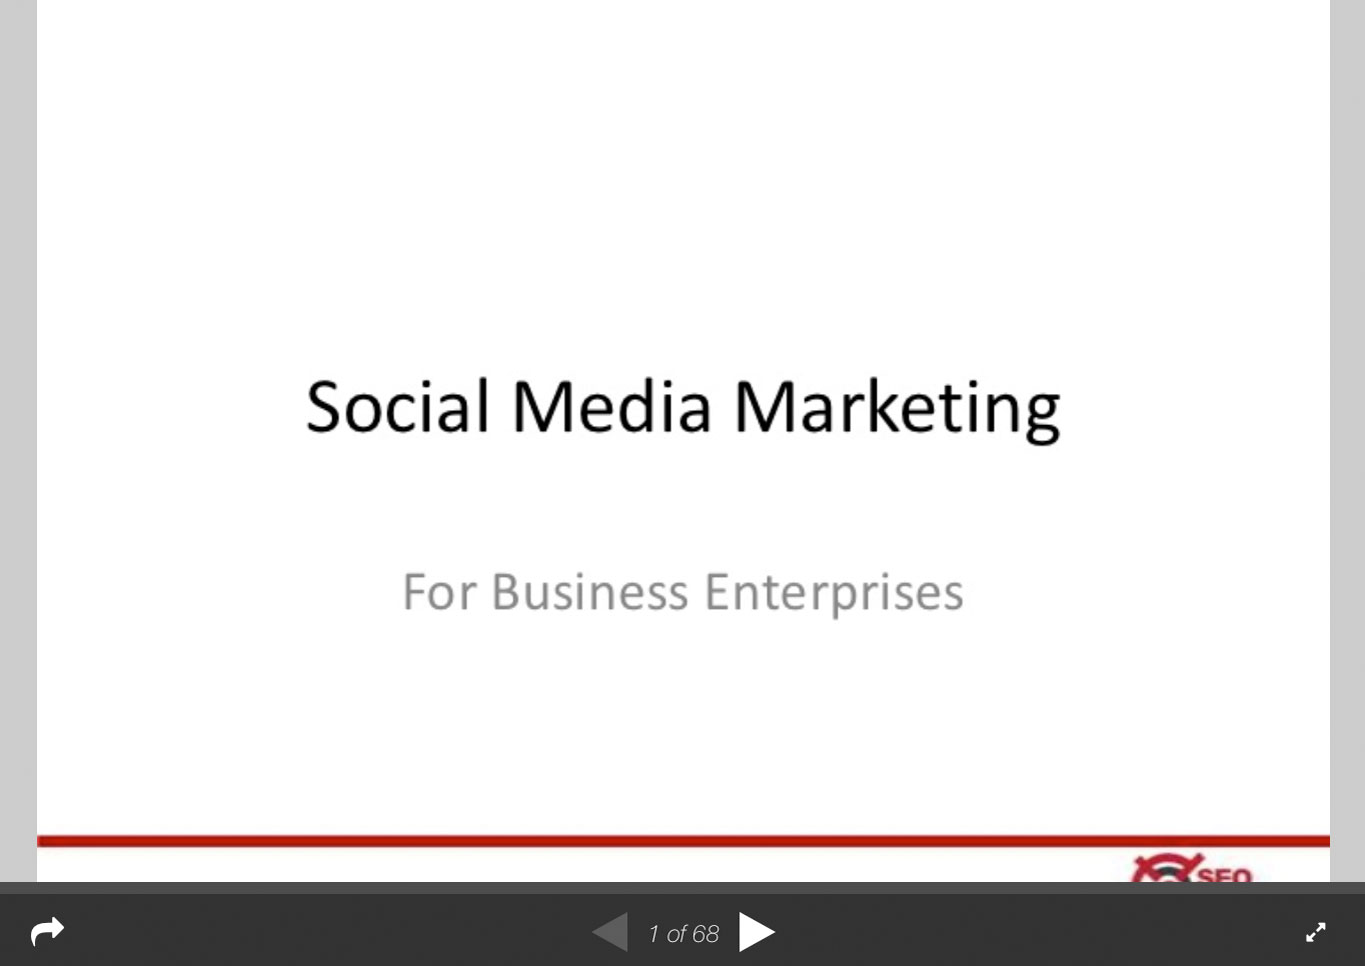 Social Media Marketing for Business Enterprises